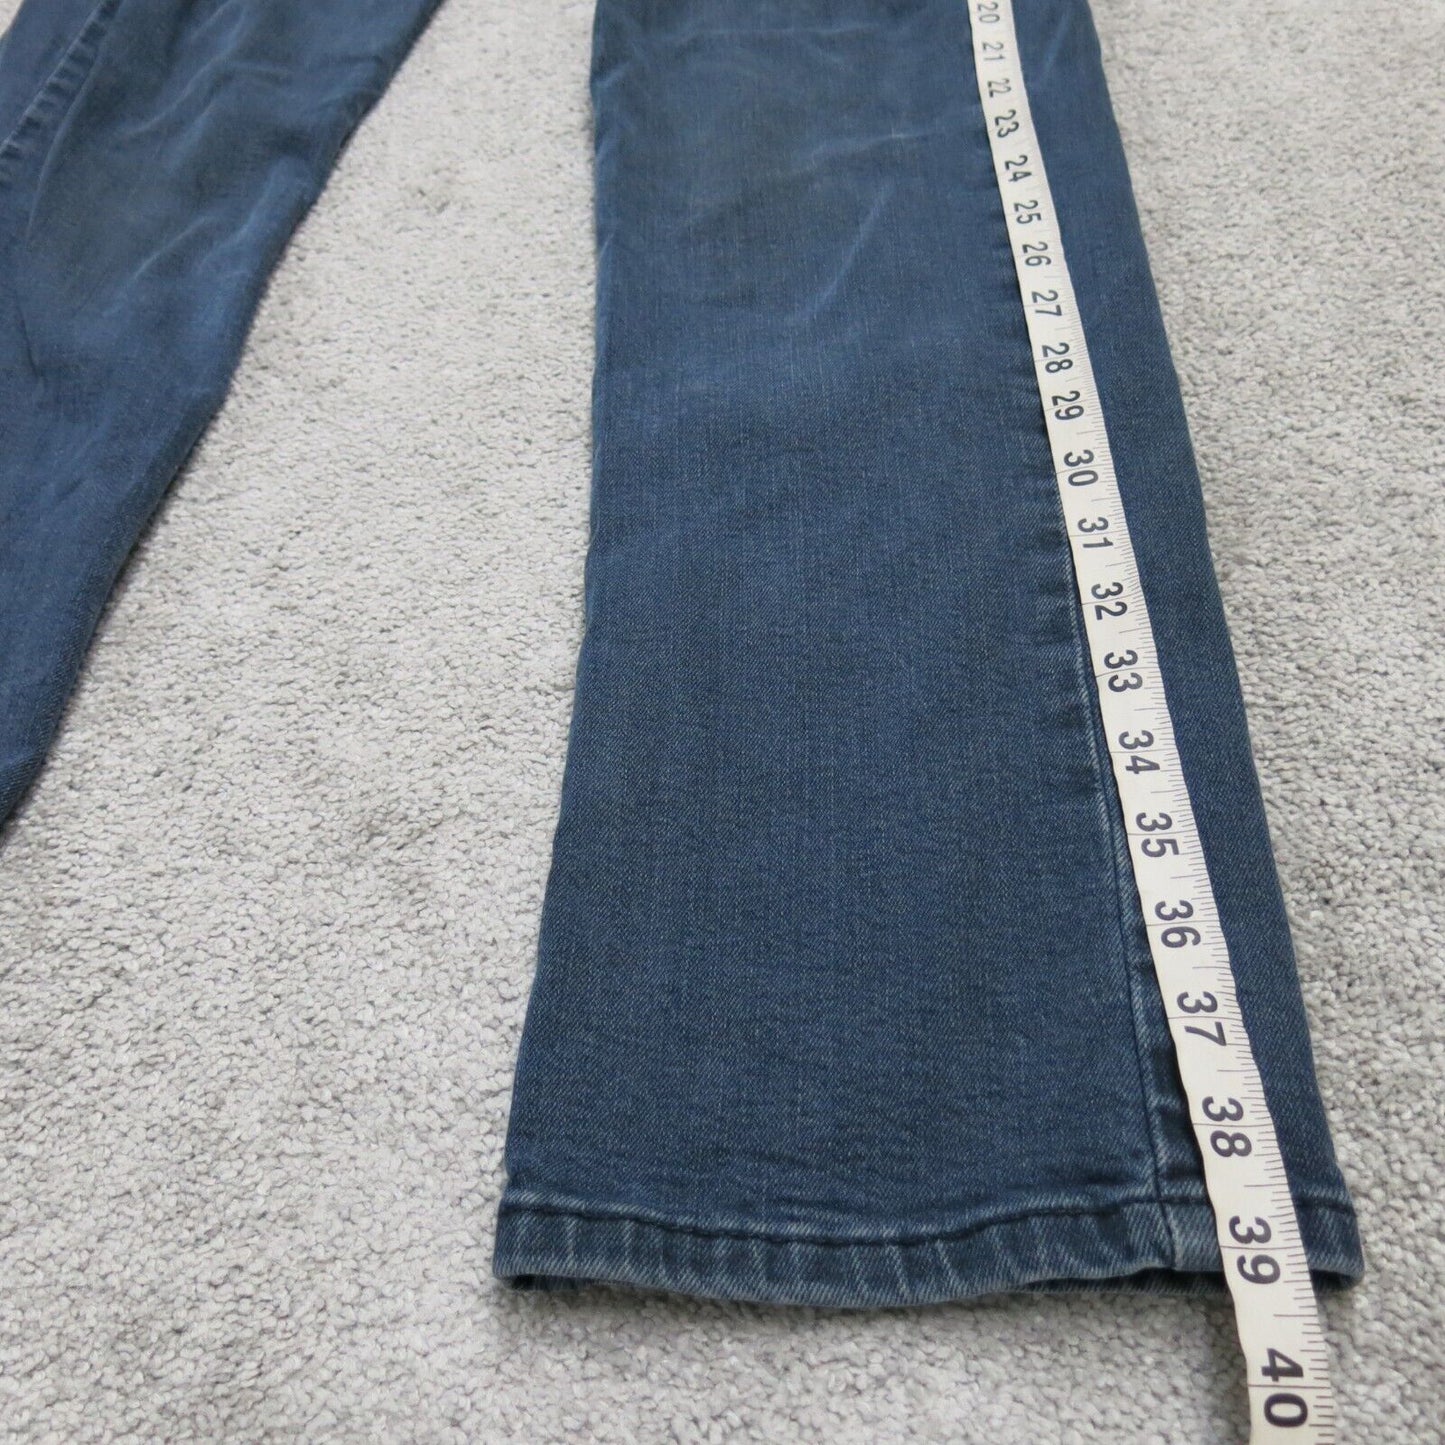 Levis 514 Mens Slim Straight Leg Jeans Low Rise Flat Front Blue Size W29xL32